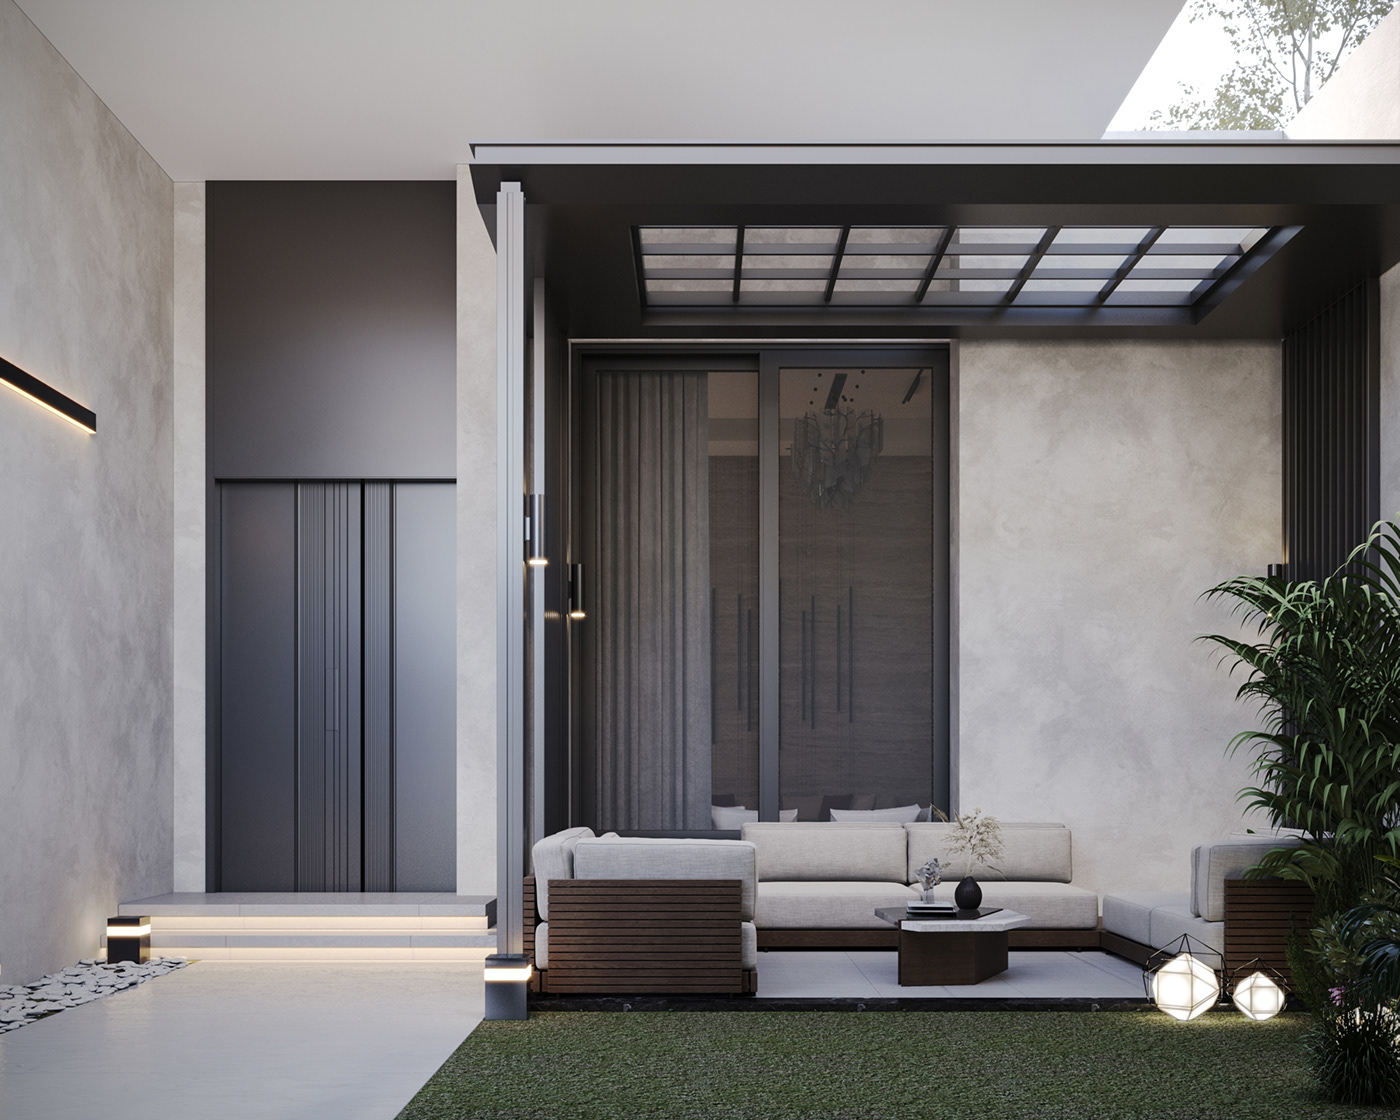 modern simple interior design  garden backyard exterior Render minimaliist visulaization yard